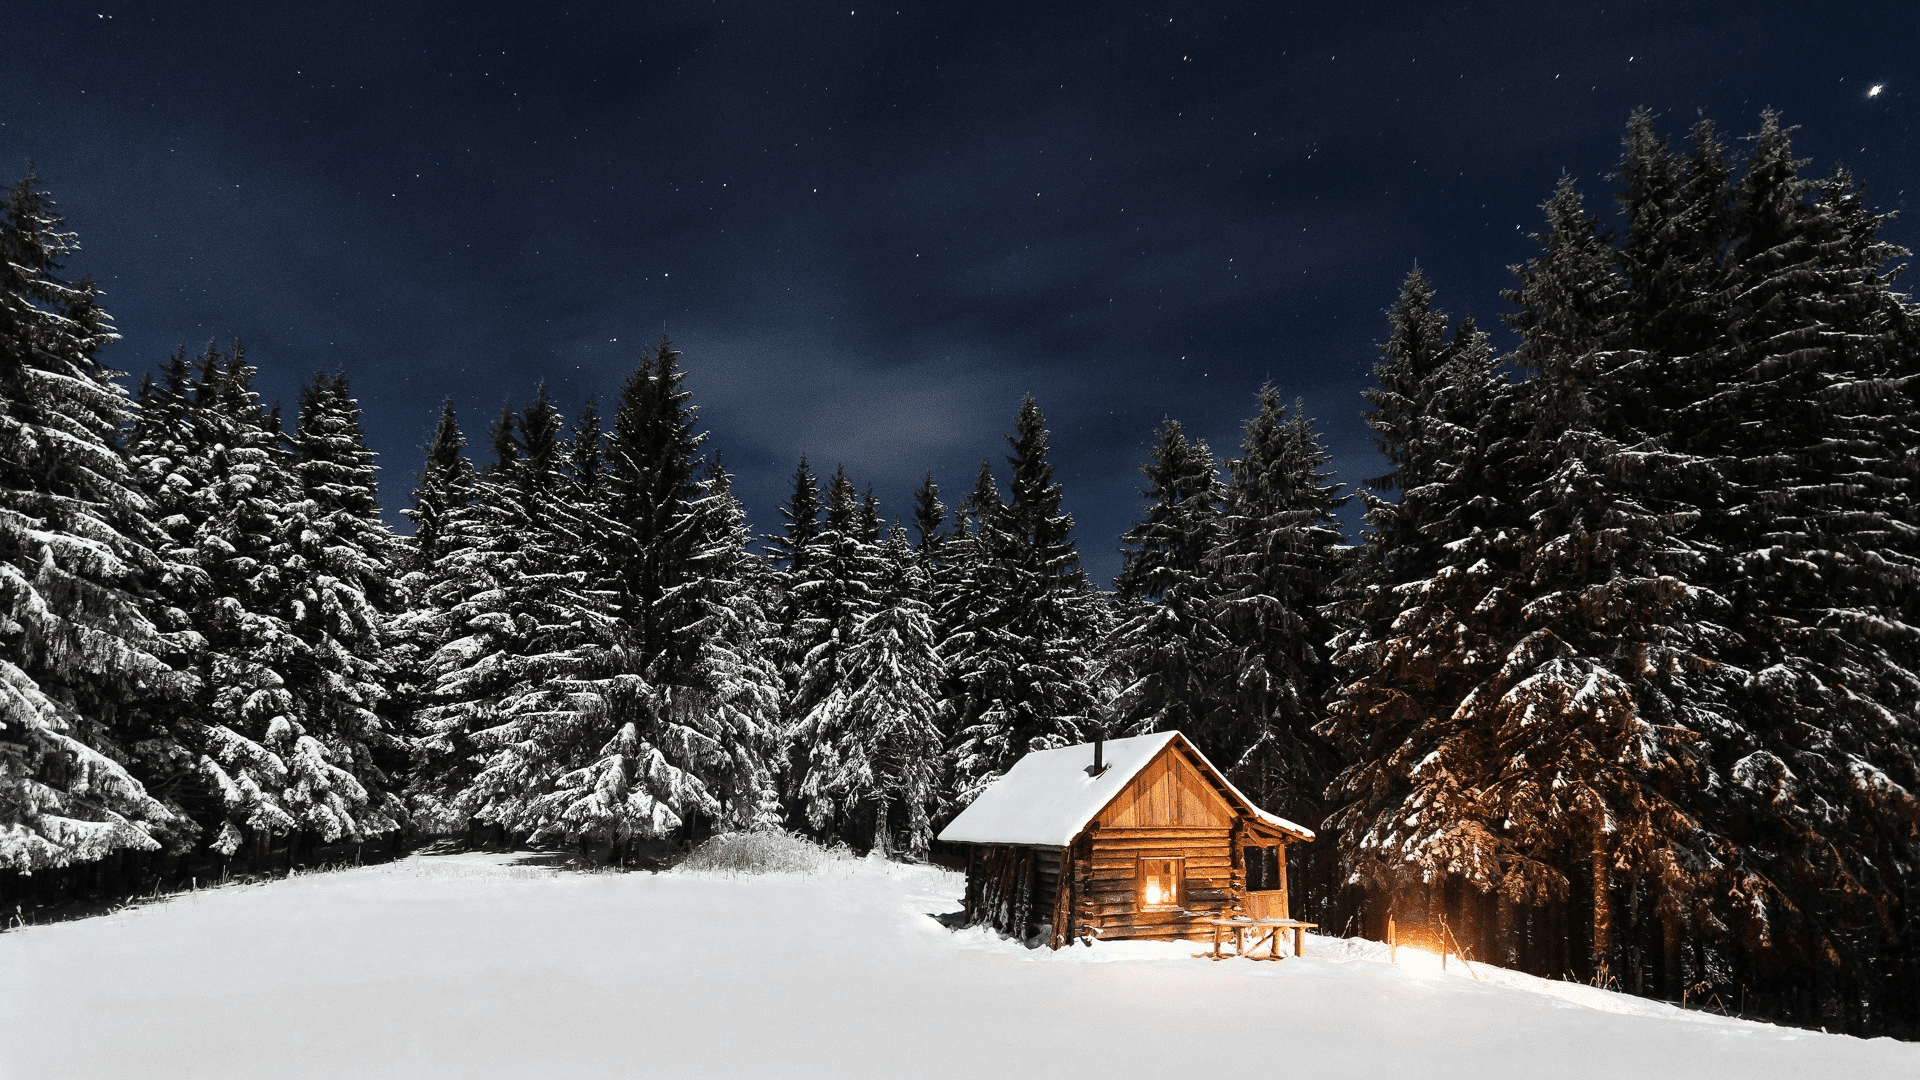 Волшебство зимы: выбирай изображение снегопада по своему вкусу! | Красивые  падающего снега Фото №1375038 скачать